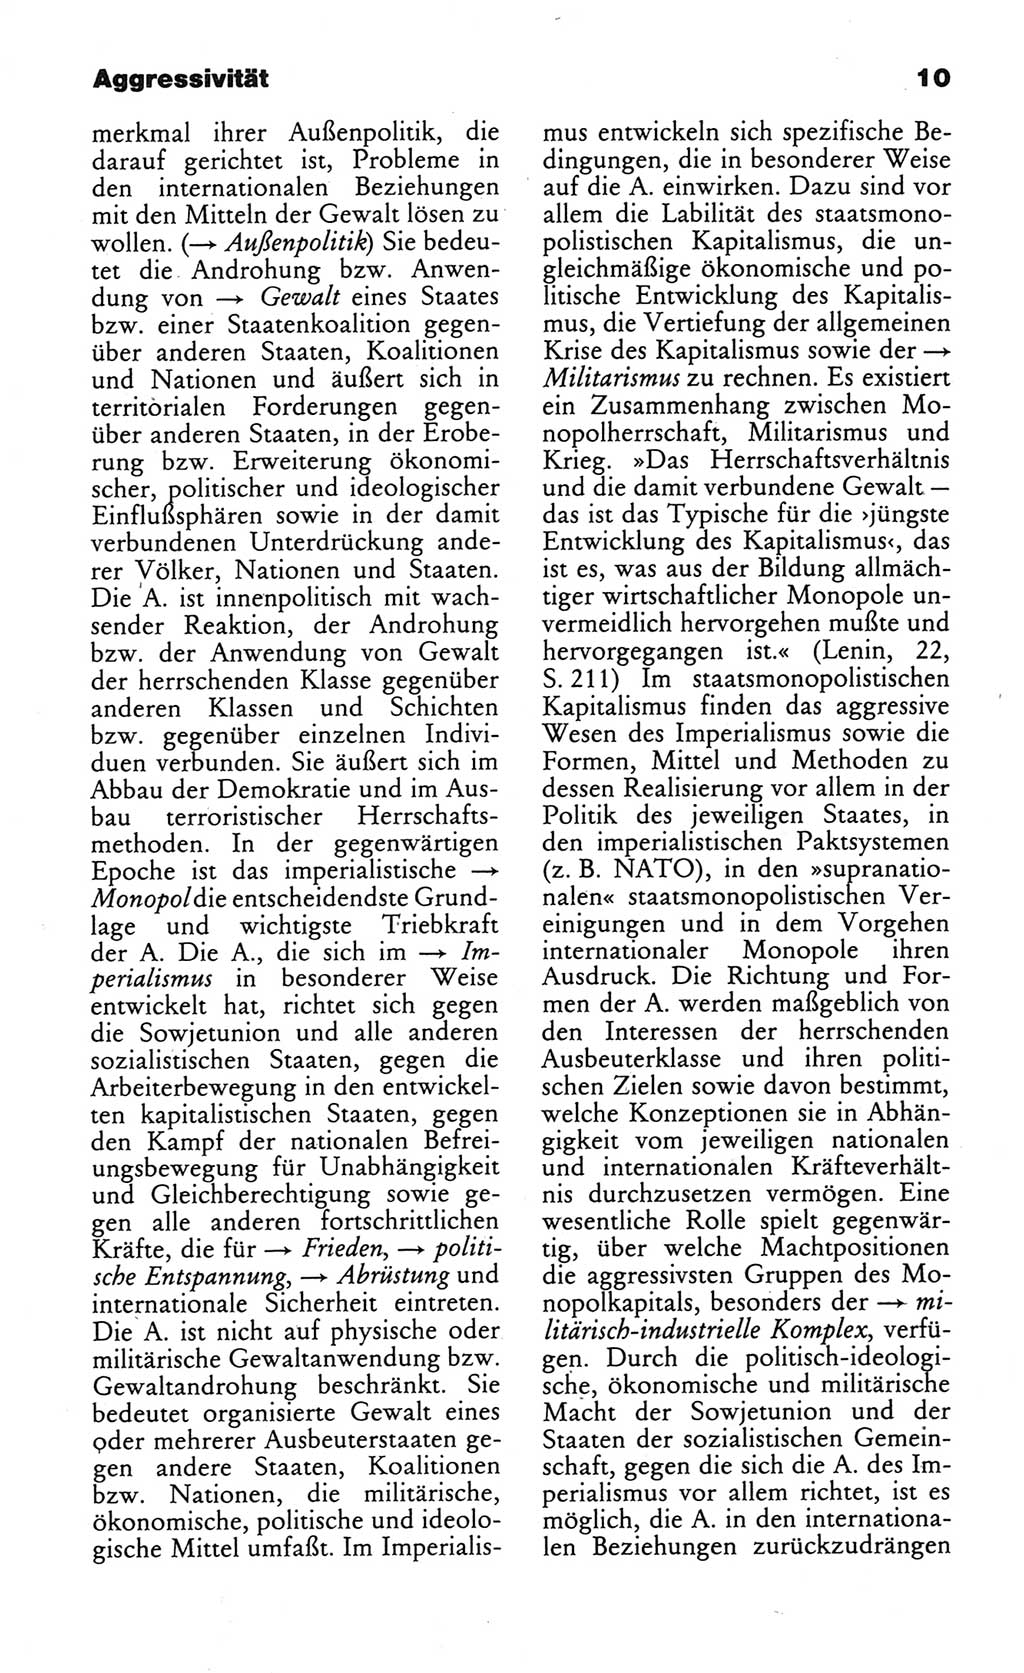 Wörterbuch des wissenschaftlichen Kommunismus [Deutsche Demokratische Republik (DDR)] 1984, Seite 10 (Wb. wiss. Komm. DDR 1984, S. 10)